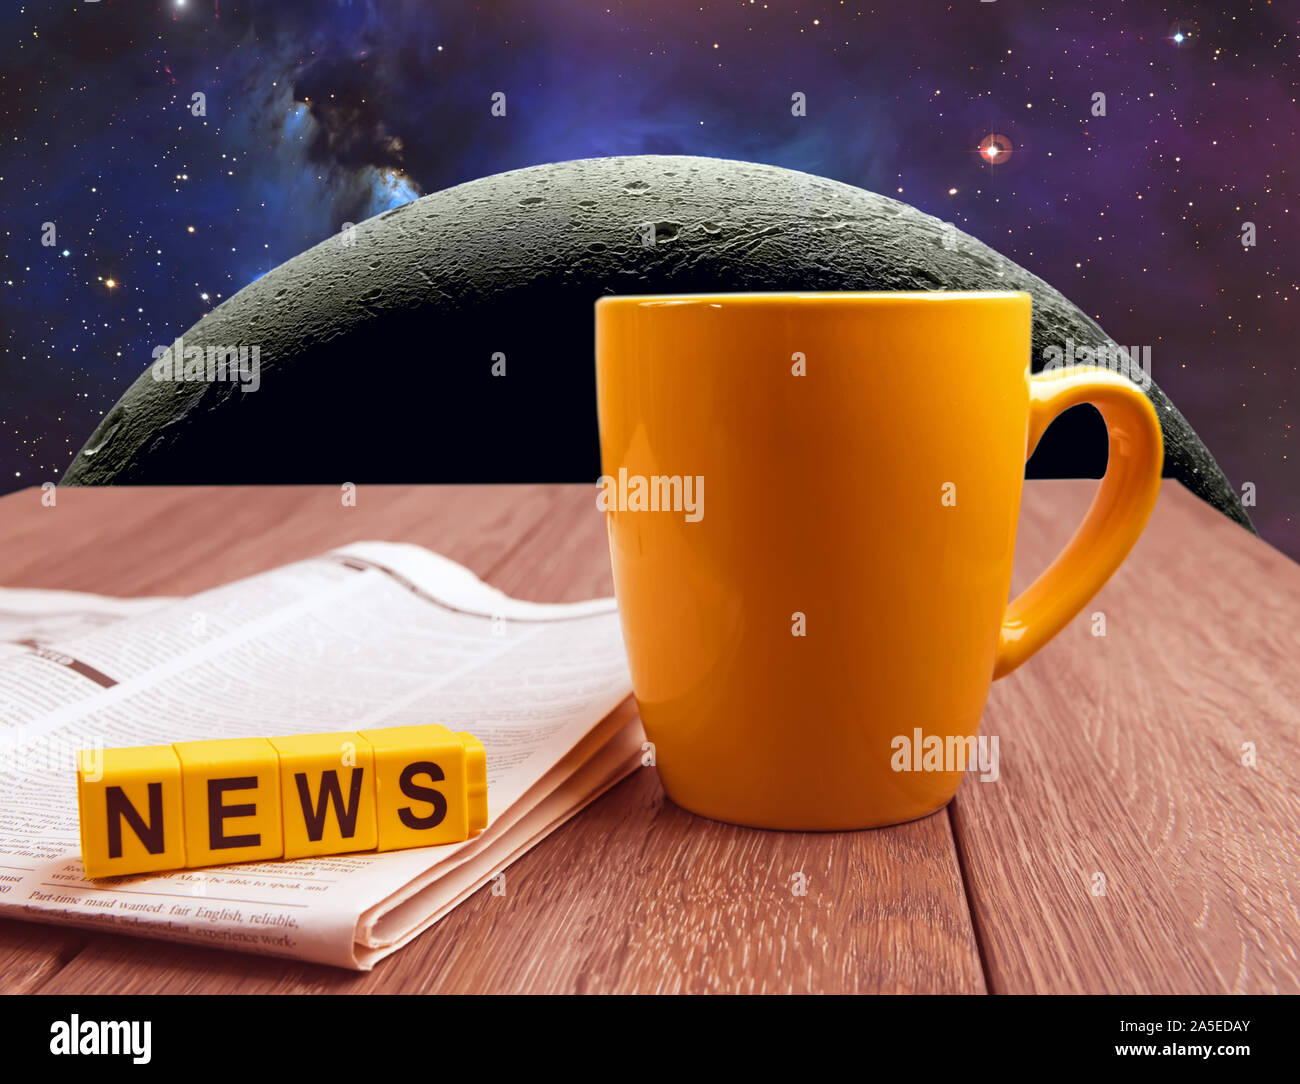 Platz mond Reise News collage Bild. Becher Kaffee und Zeitung auf hölzernen Tisch im Raum Hintergrund Stockfoto